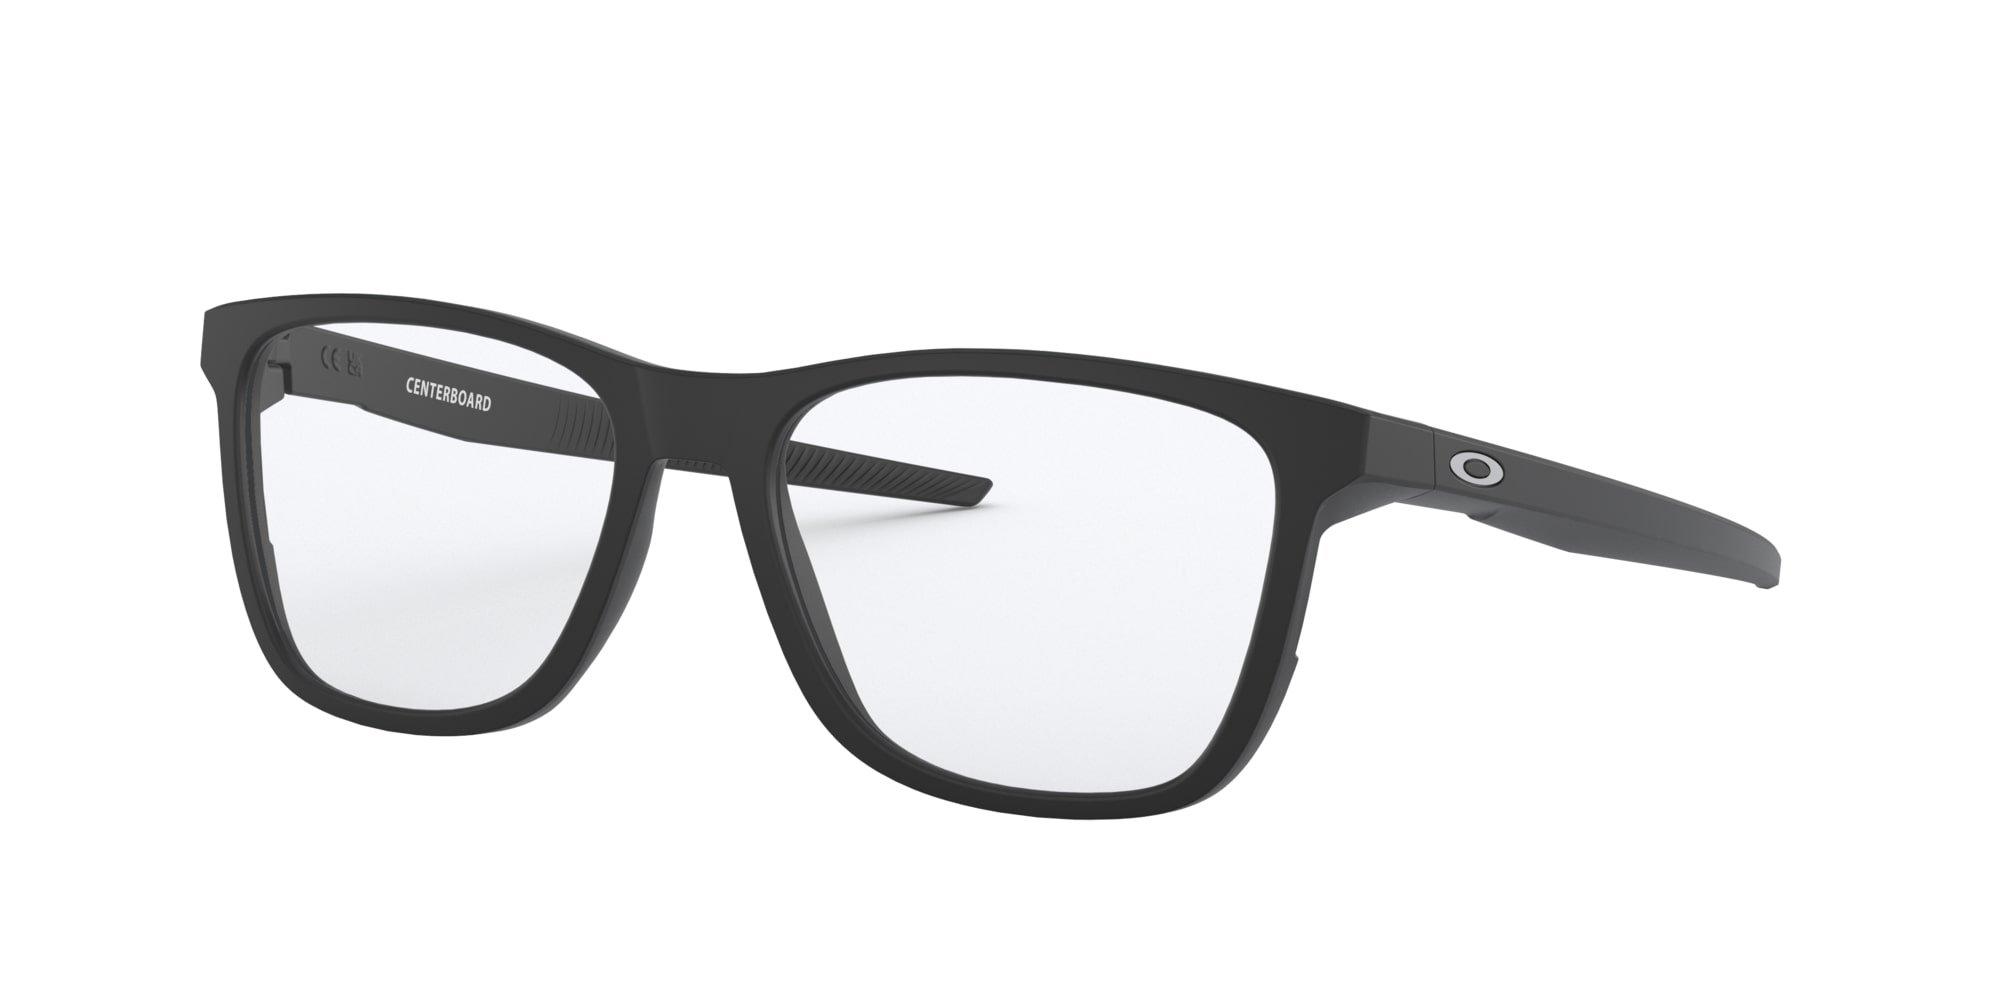 Das Bild zeigt die Korrektionsbrille OX8163 816301 von der Marke Oakley  in  schwarz satiniert.